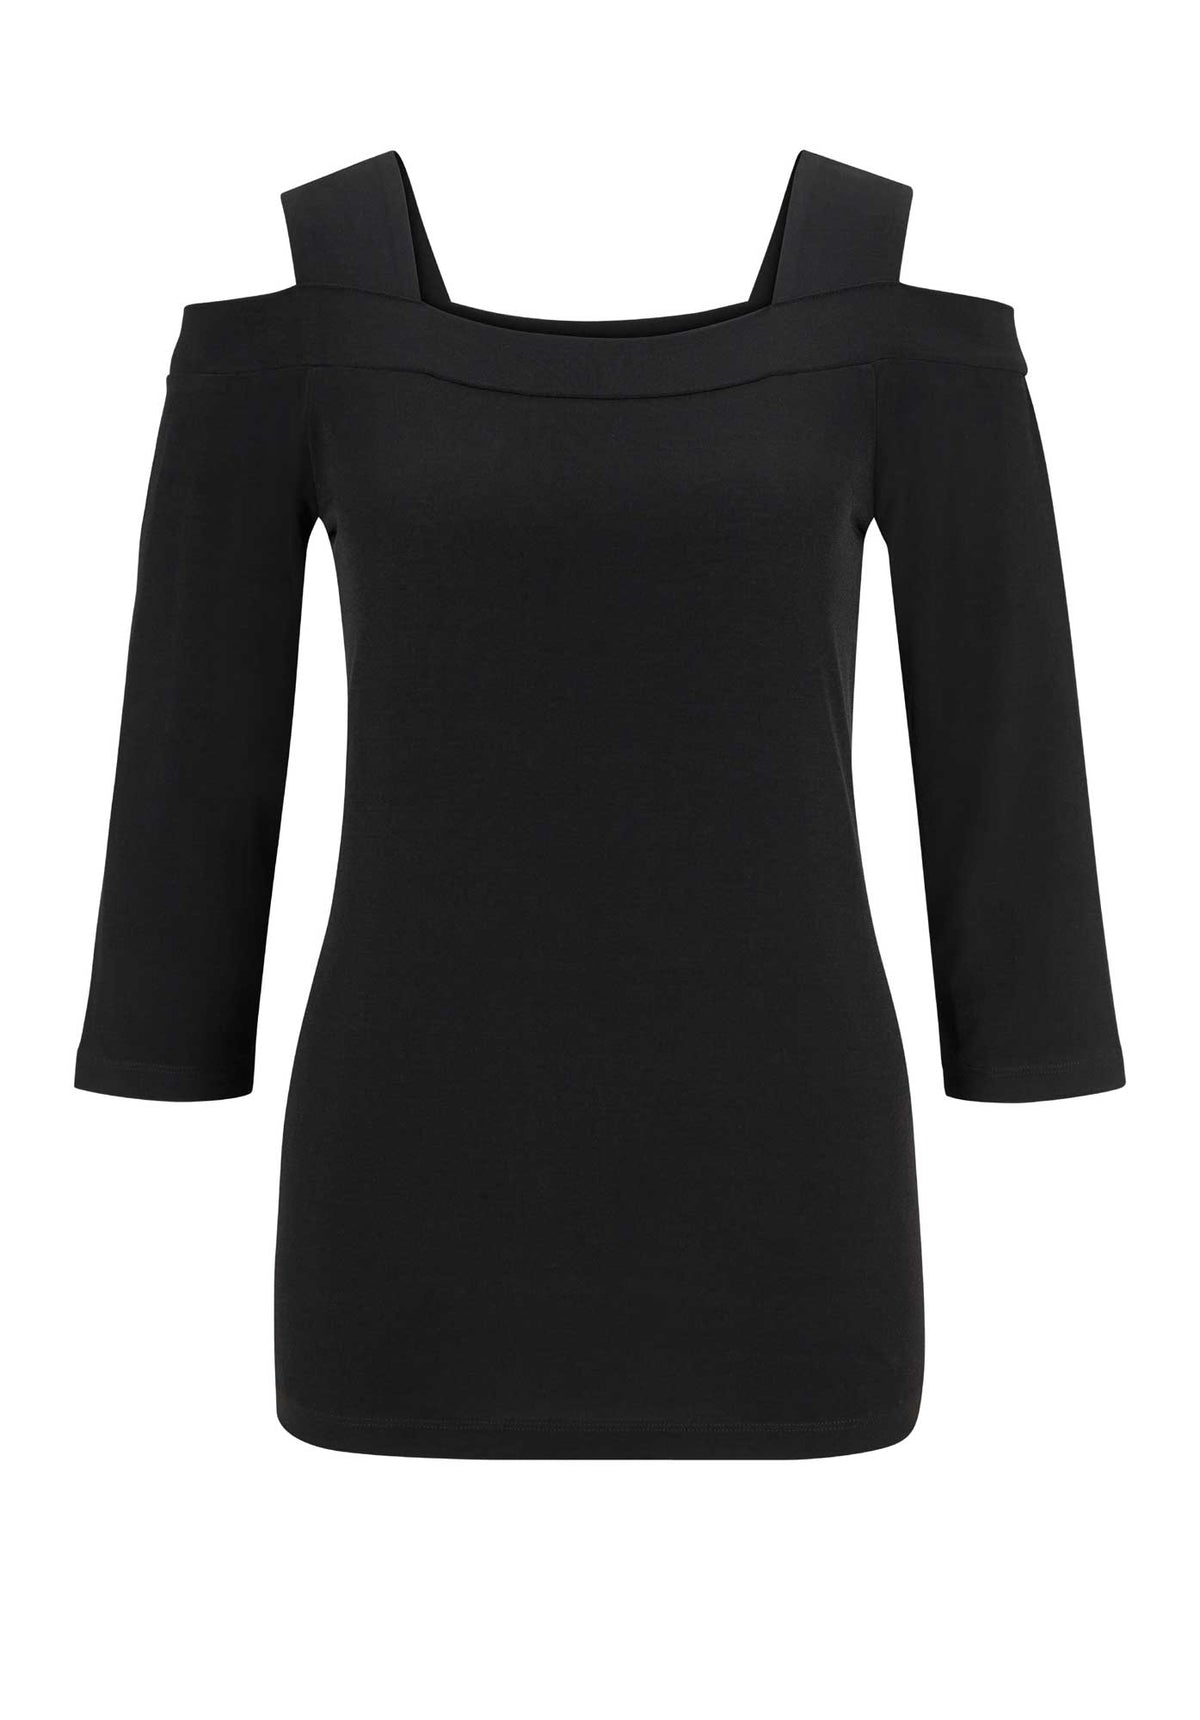 ALESSA W. COLLECTION Damen Jerseyshirt mit Cut-Outs, schwarz